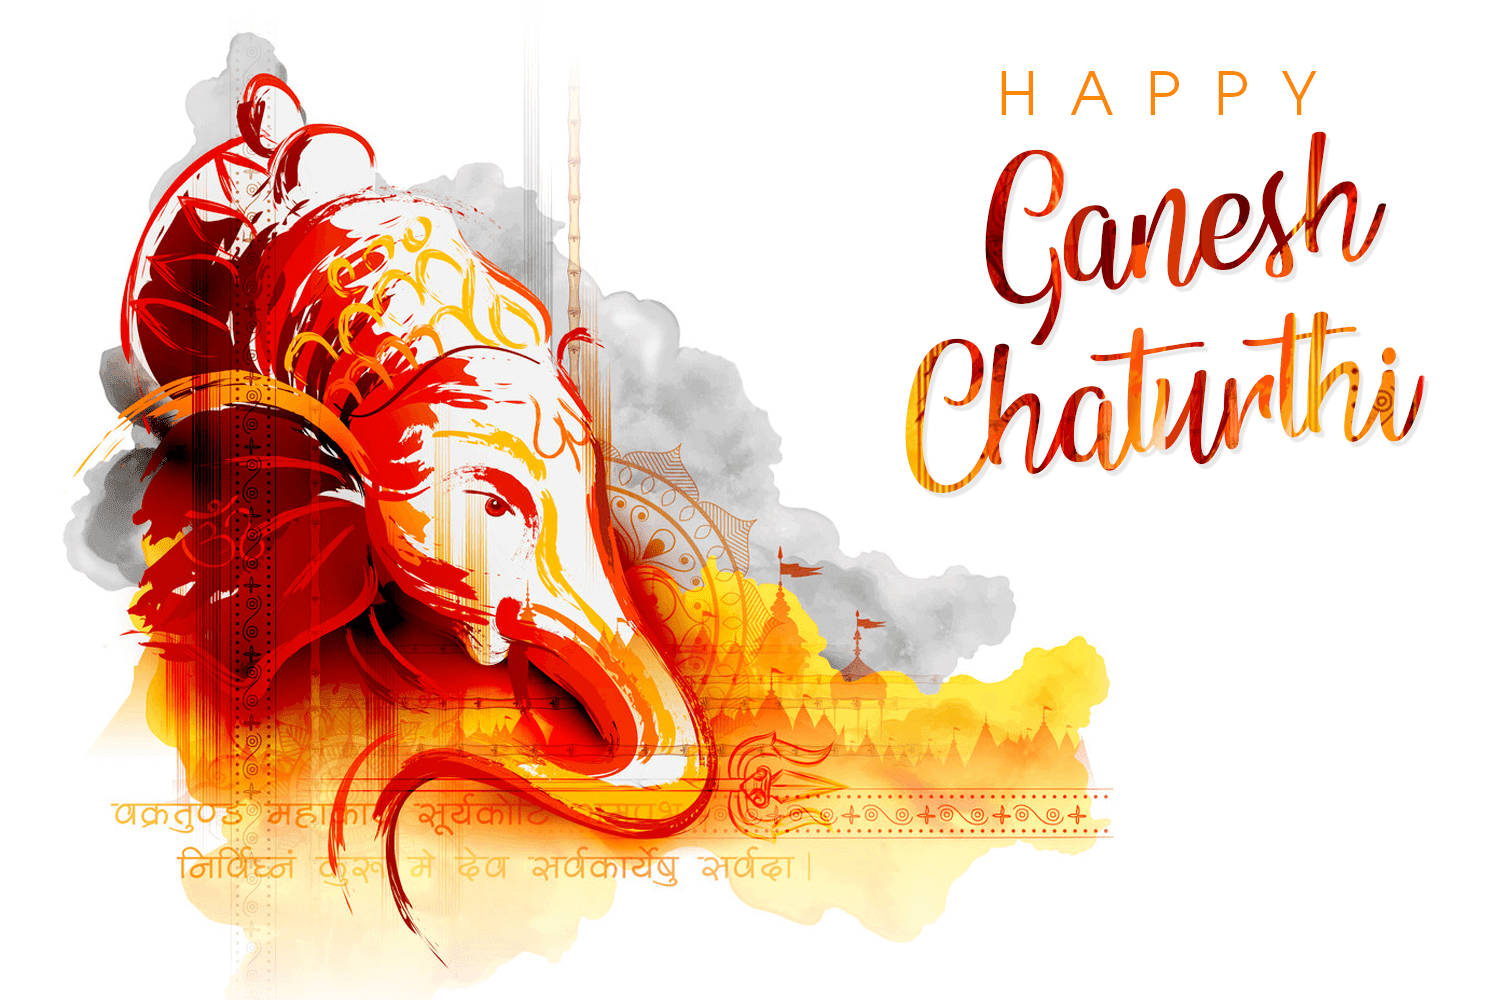 Ganeshchaturthi-vitt Kort = Ganesh Chaturthi White Card Wallpaper